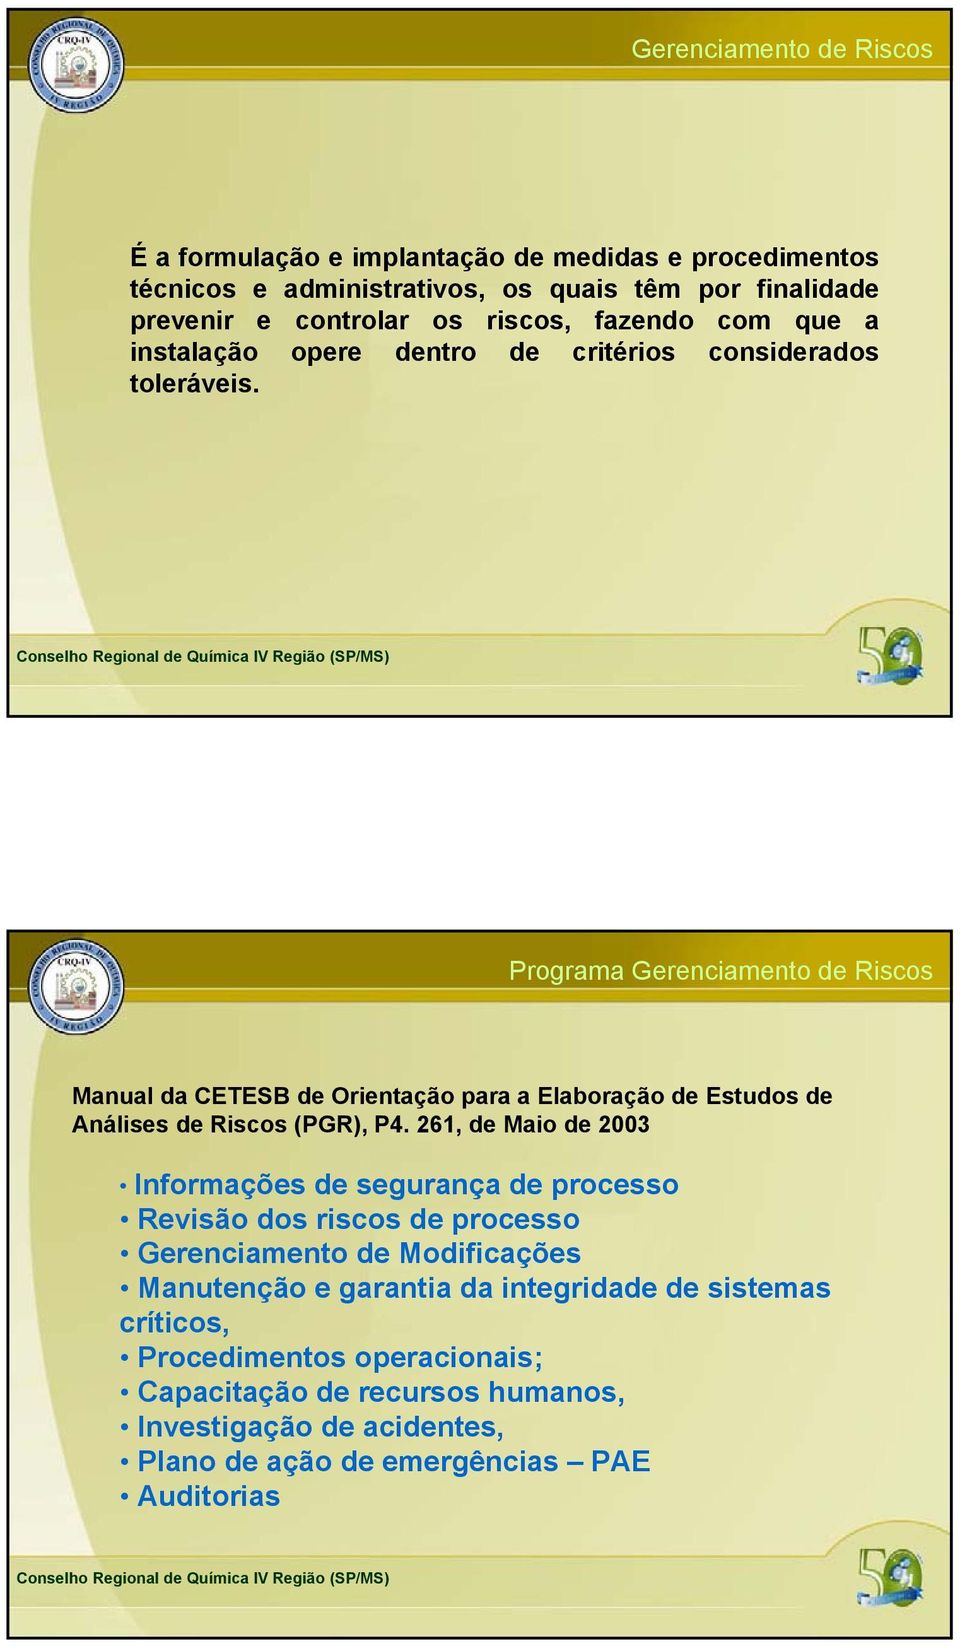 Programa Gerenciamento de Riscos Manual da CETESB de Orientação para a Elaboração de Estudos de Análises de Riscos (PGR), P.